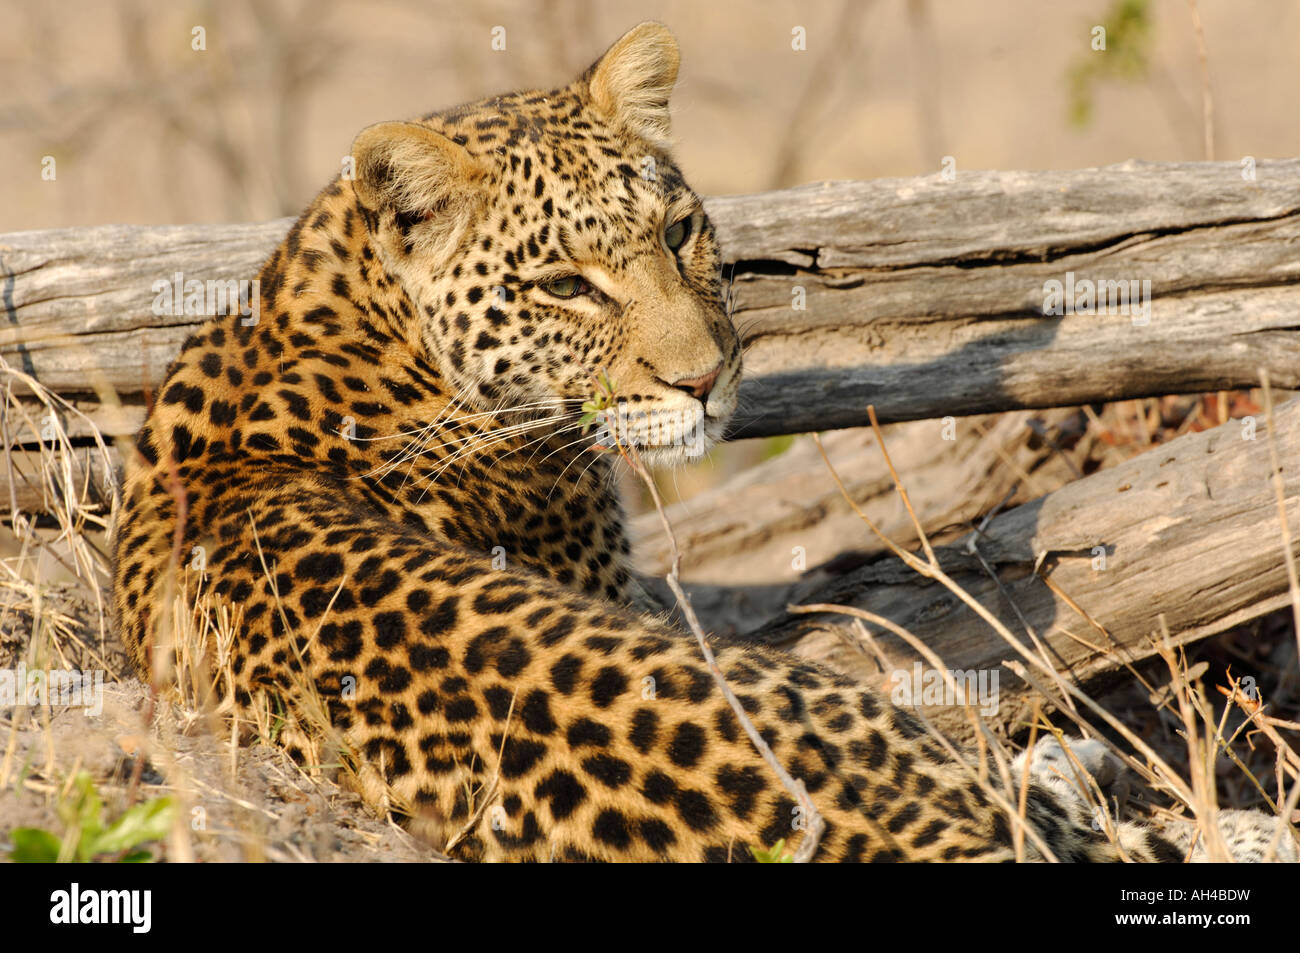 Stock Foto von einem afrikanischen Leoparden (Panthera Pardus) zusammengerollt neben ein Protokoll. Stockfoto